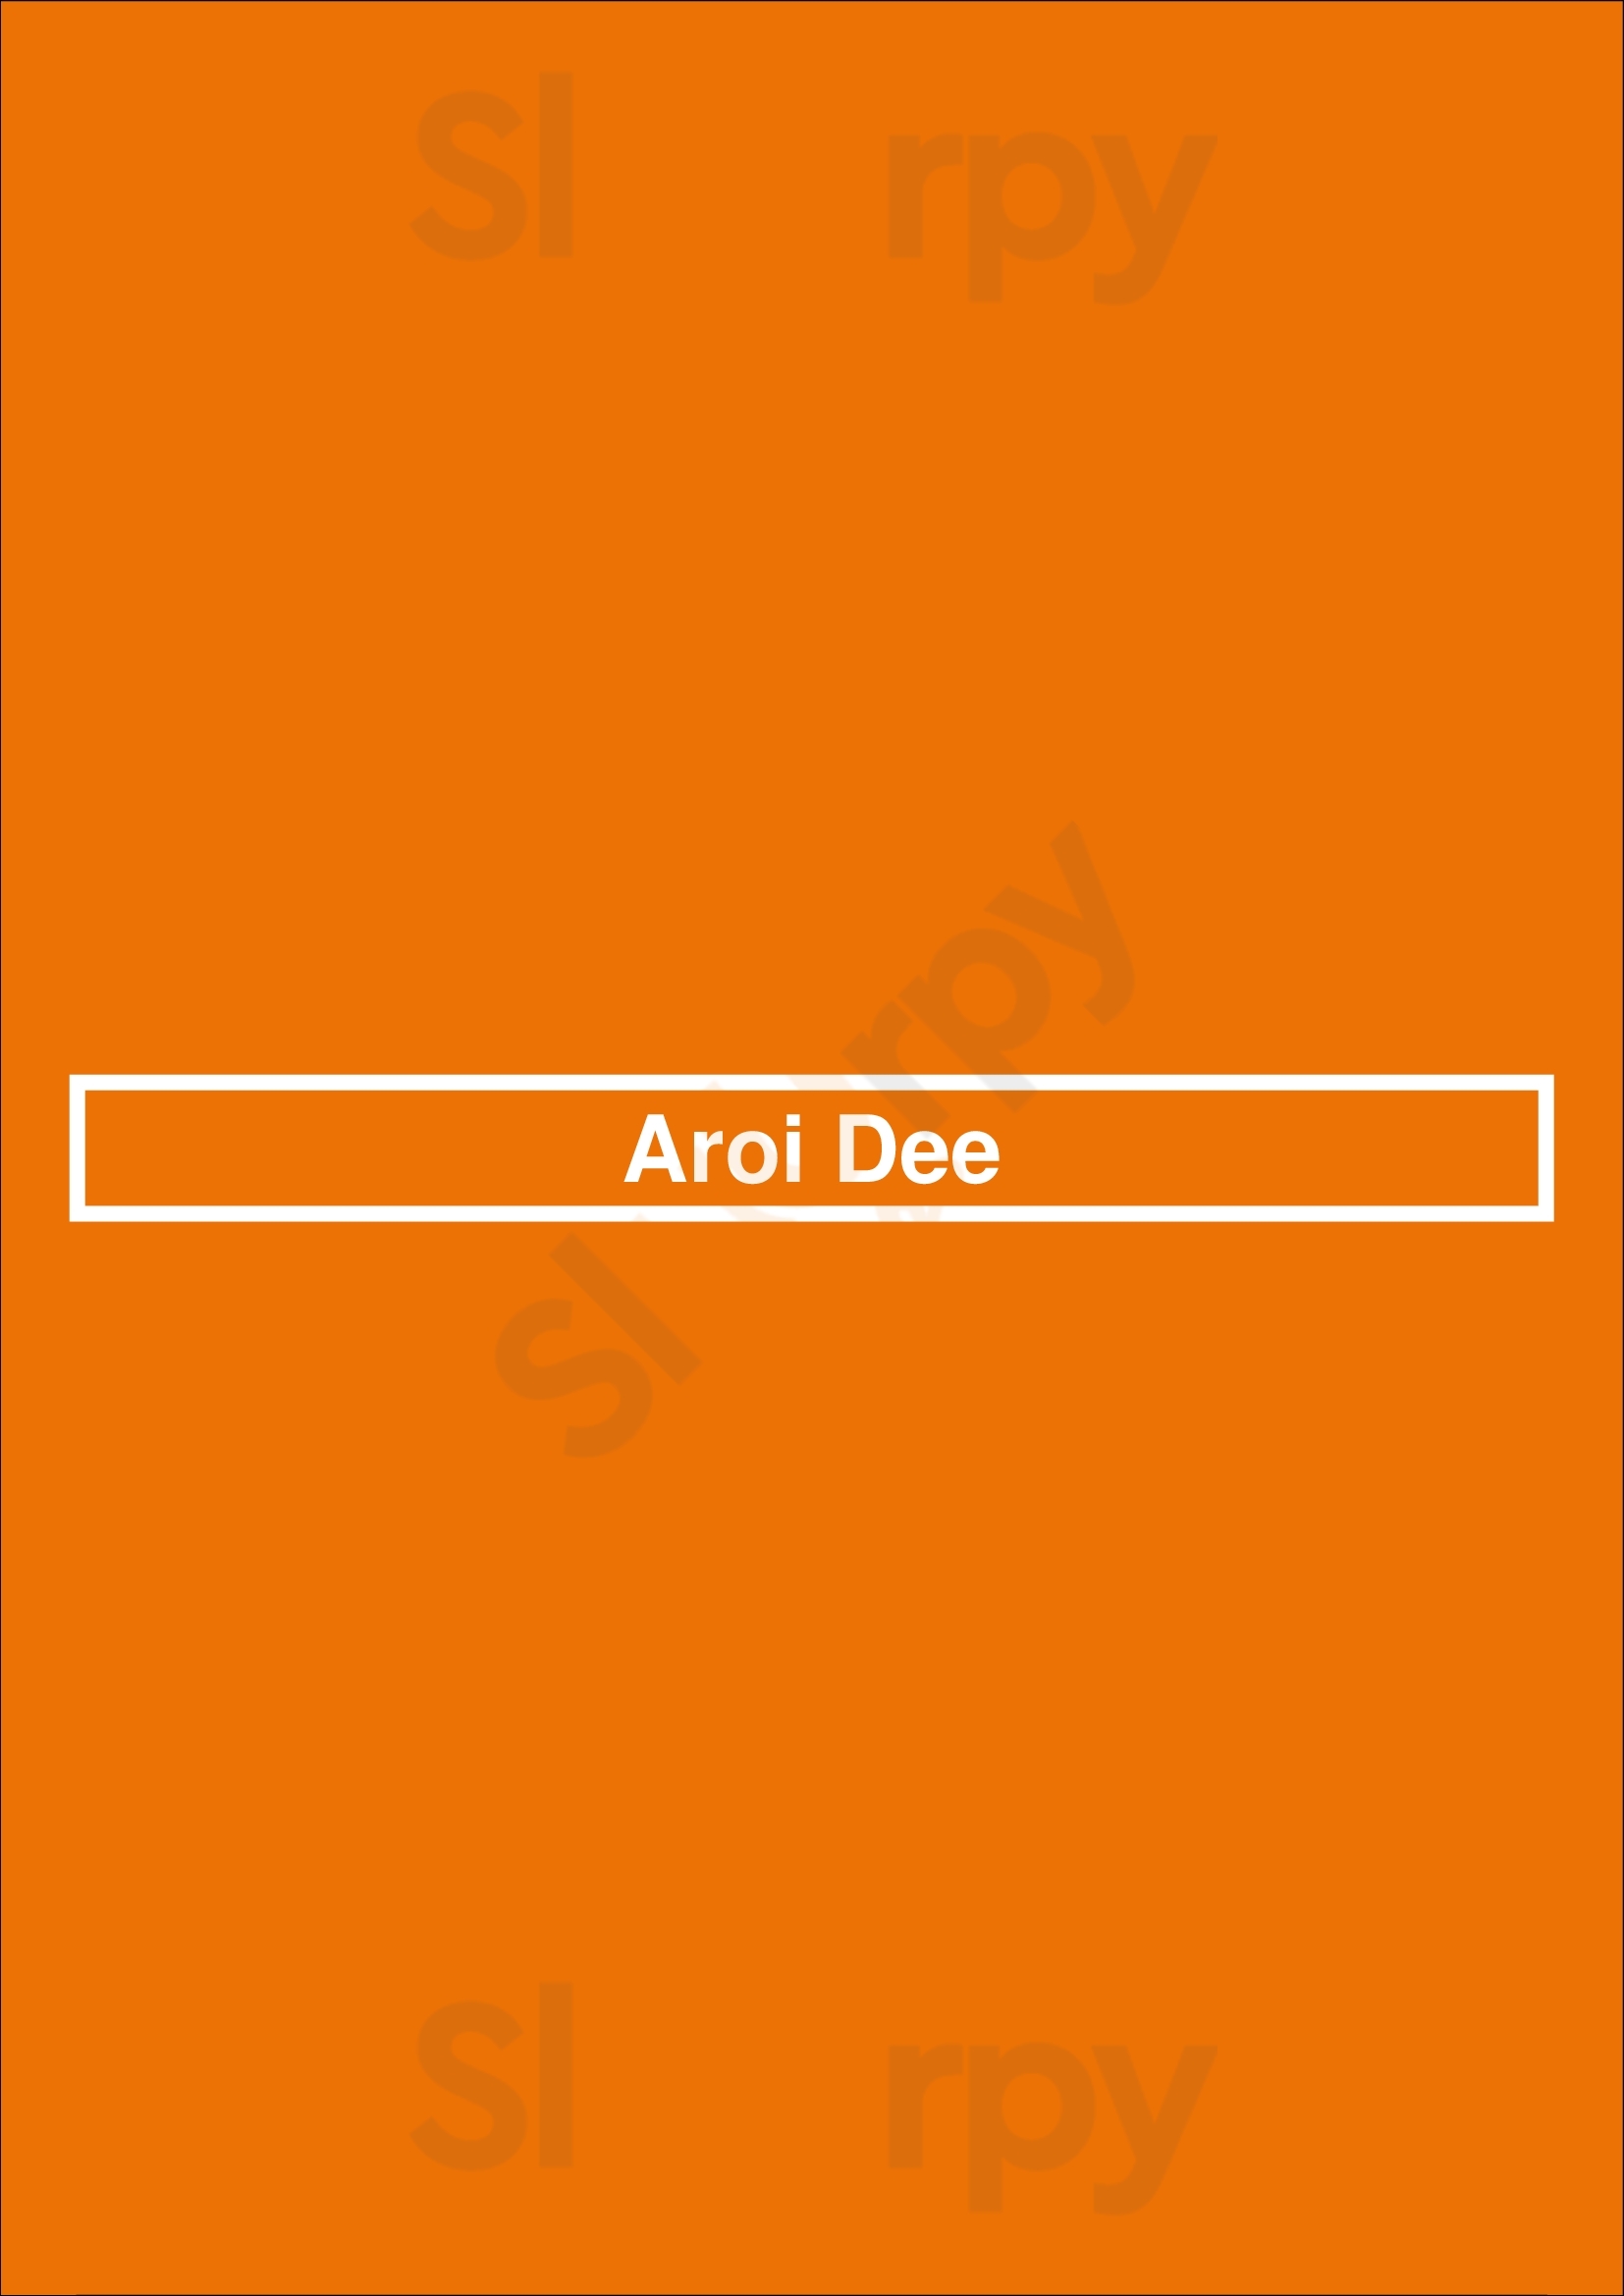 Aroi Dee Paris Menu - 1